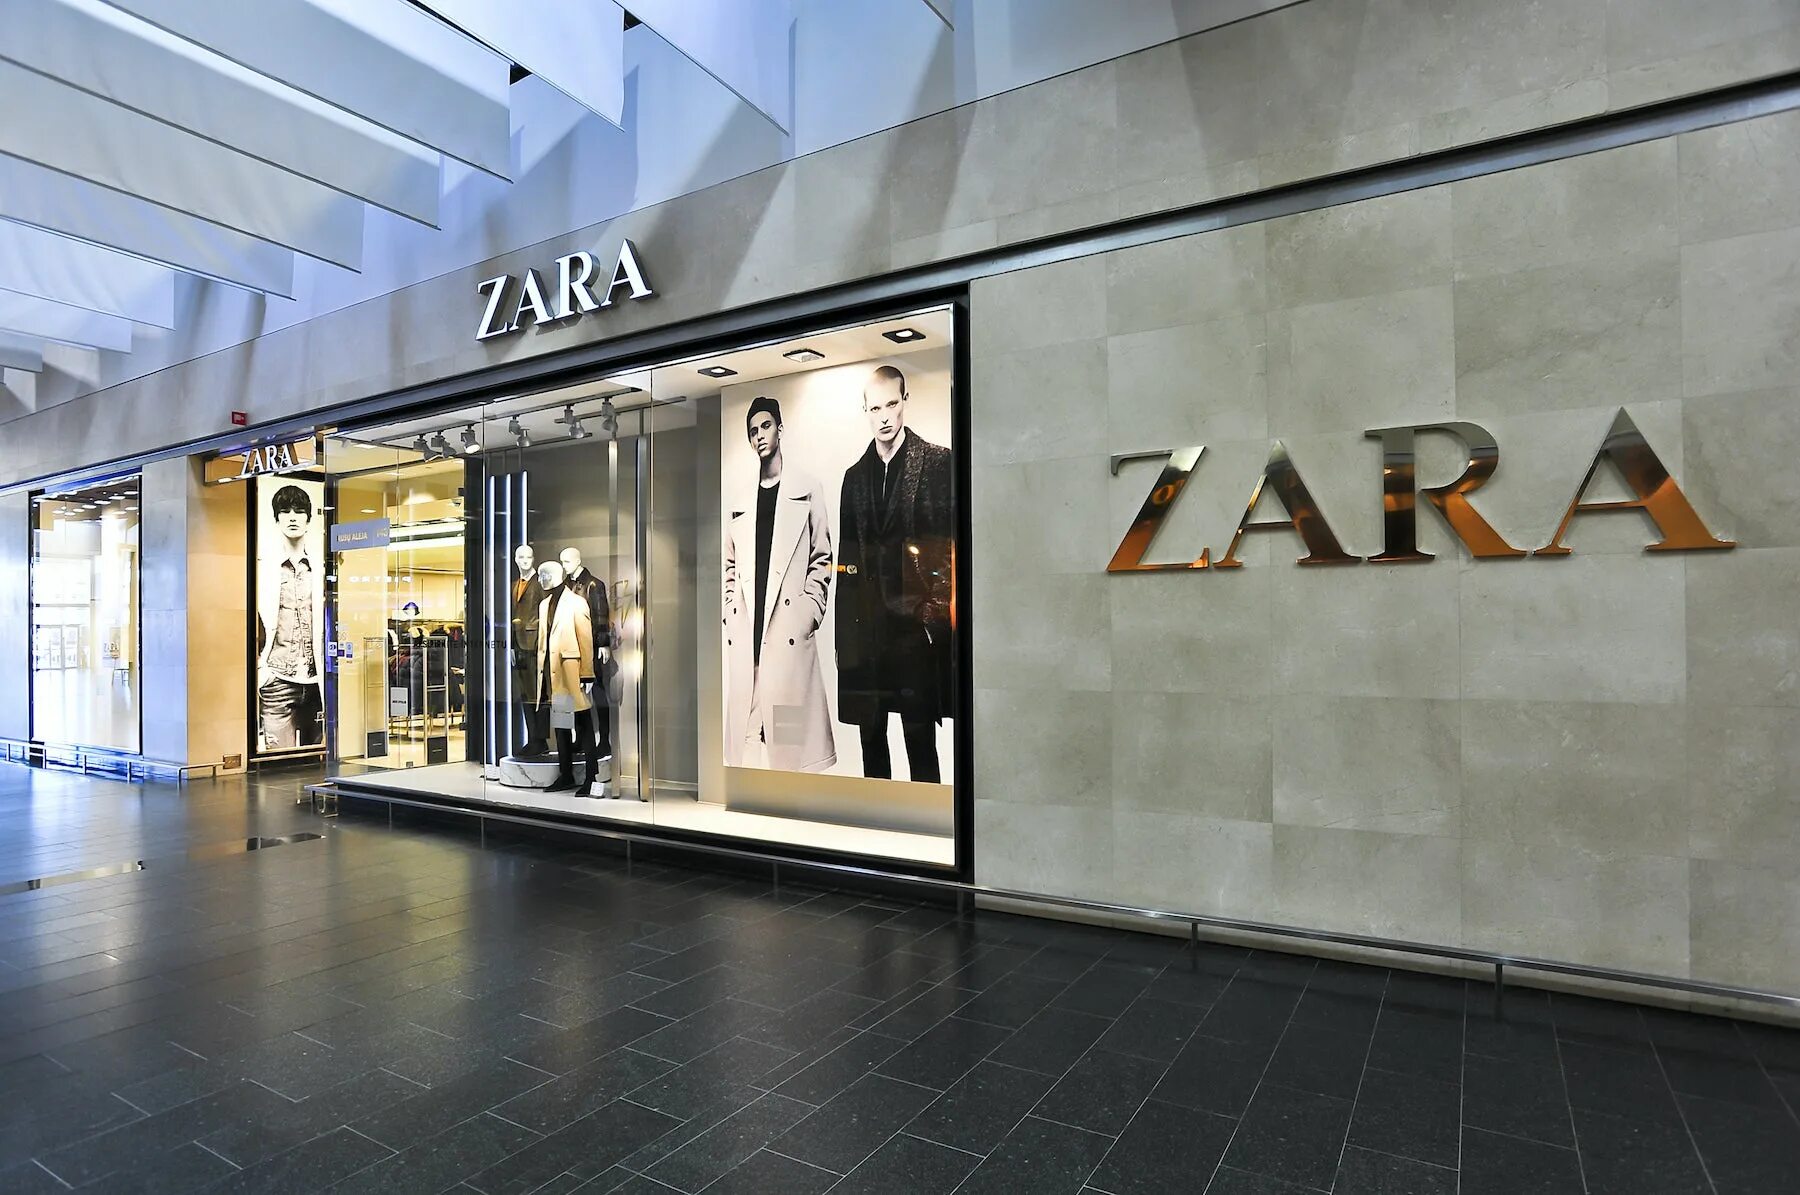 Zara express. Zara бренд. Zara фото магазина.